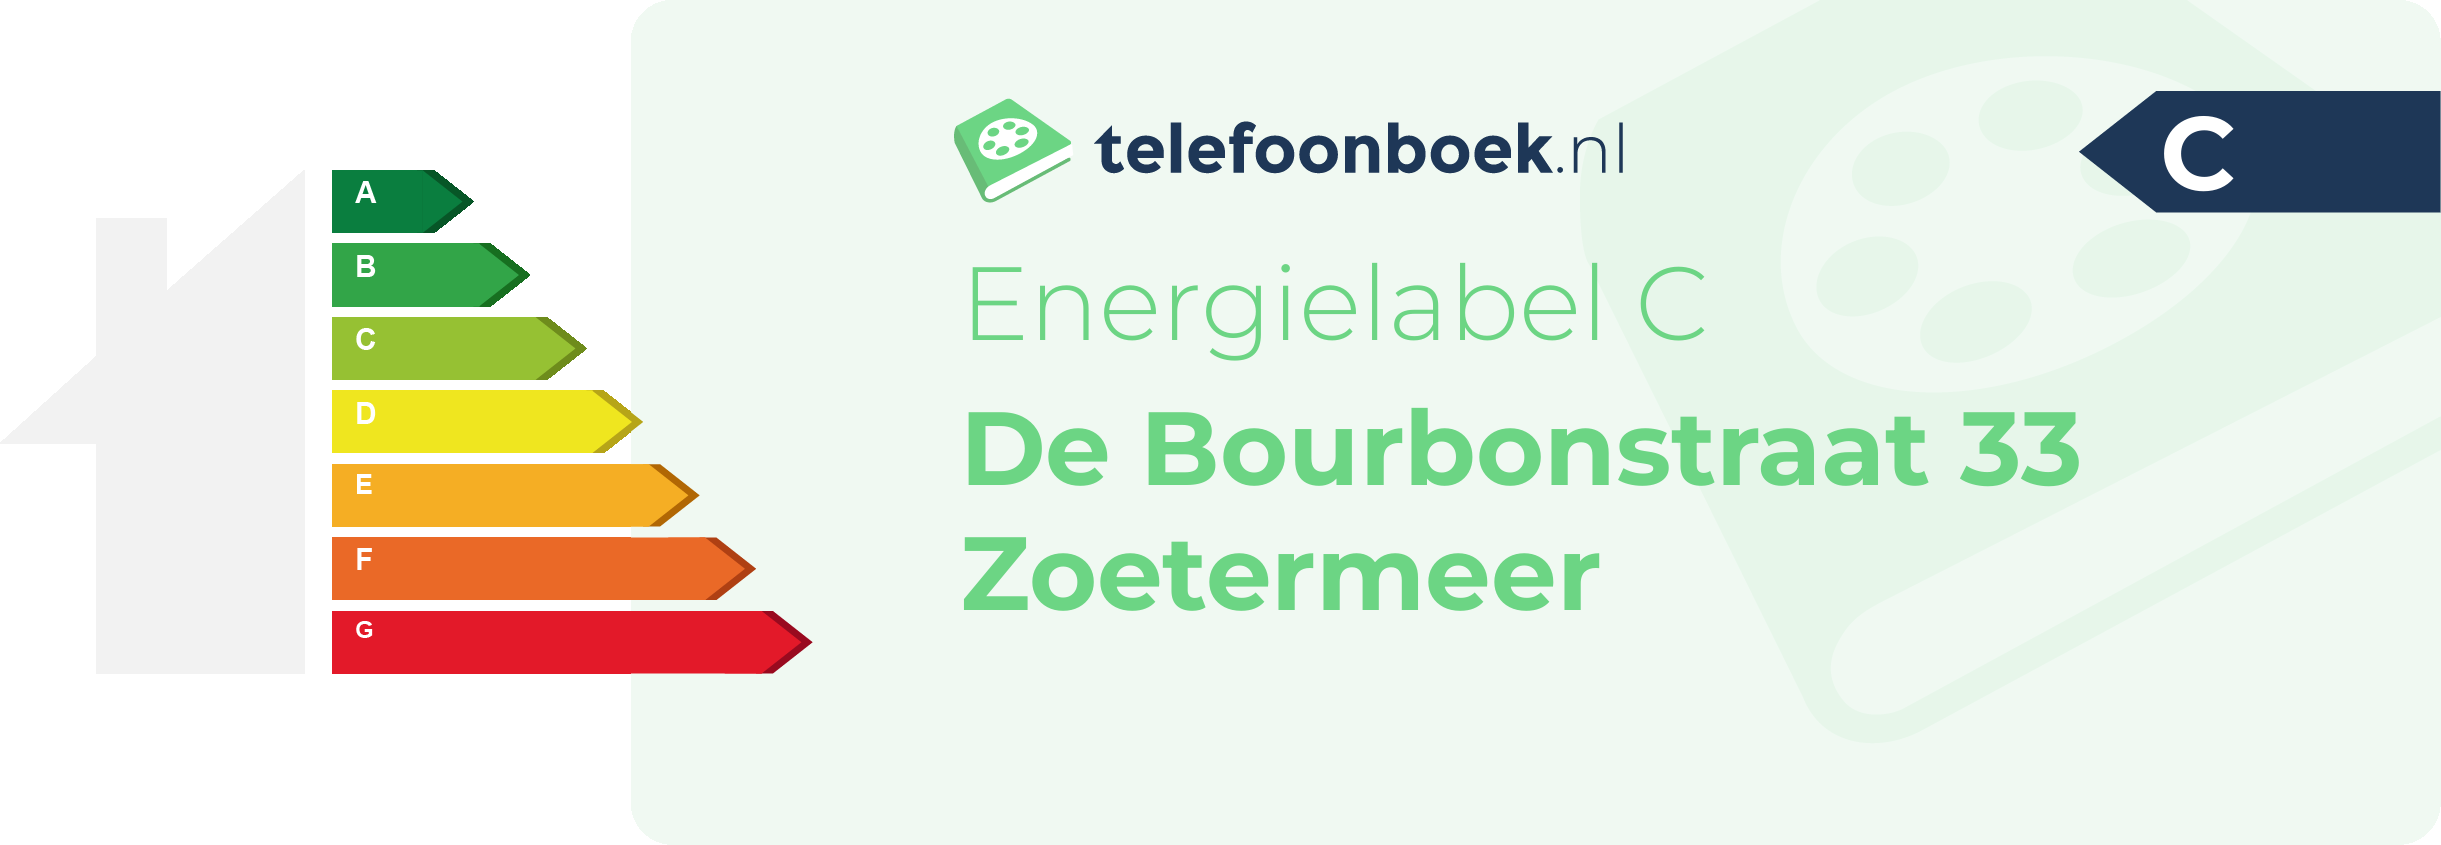 Energielabel De Bourbonstraat 33 Zoetermeer